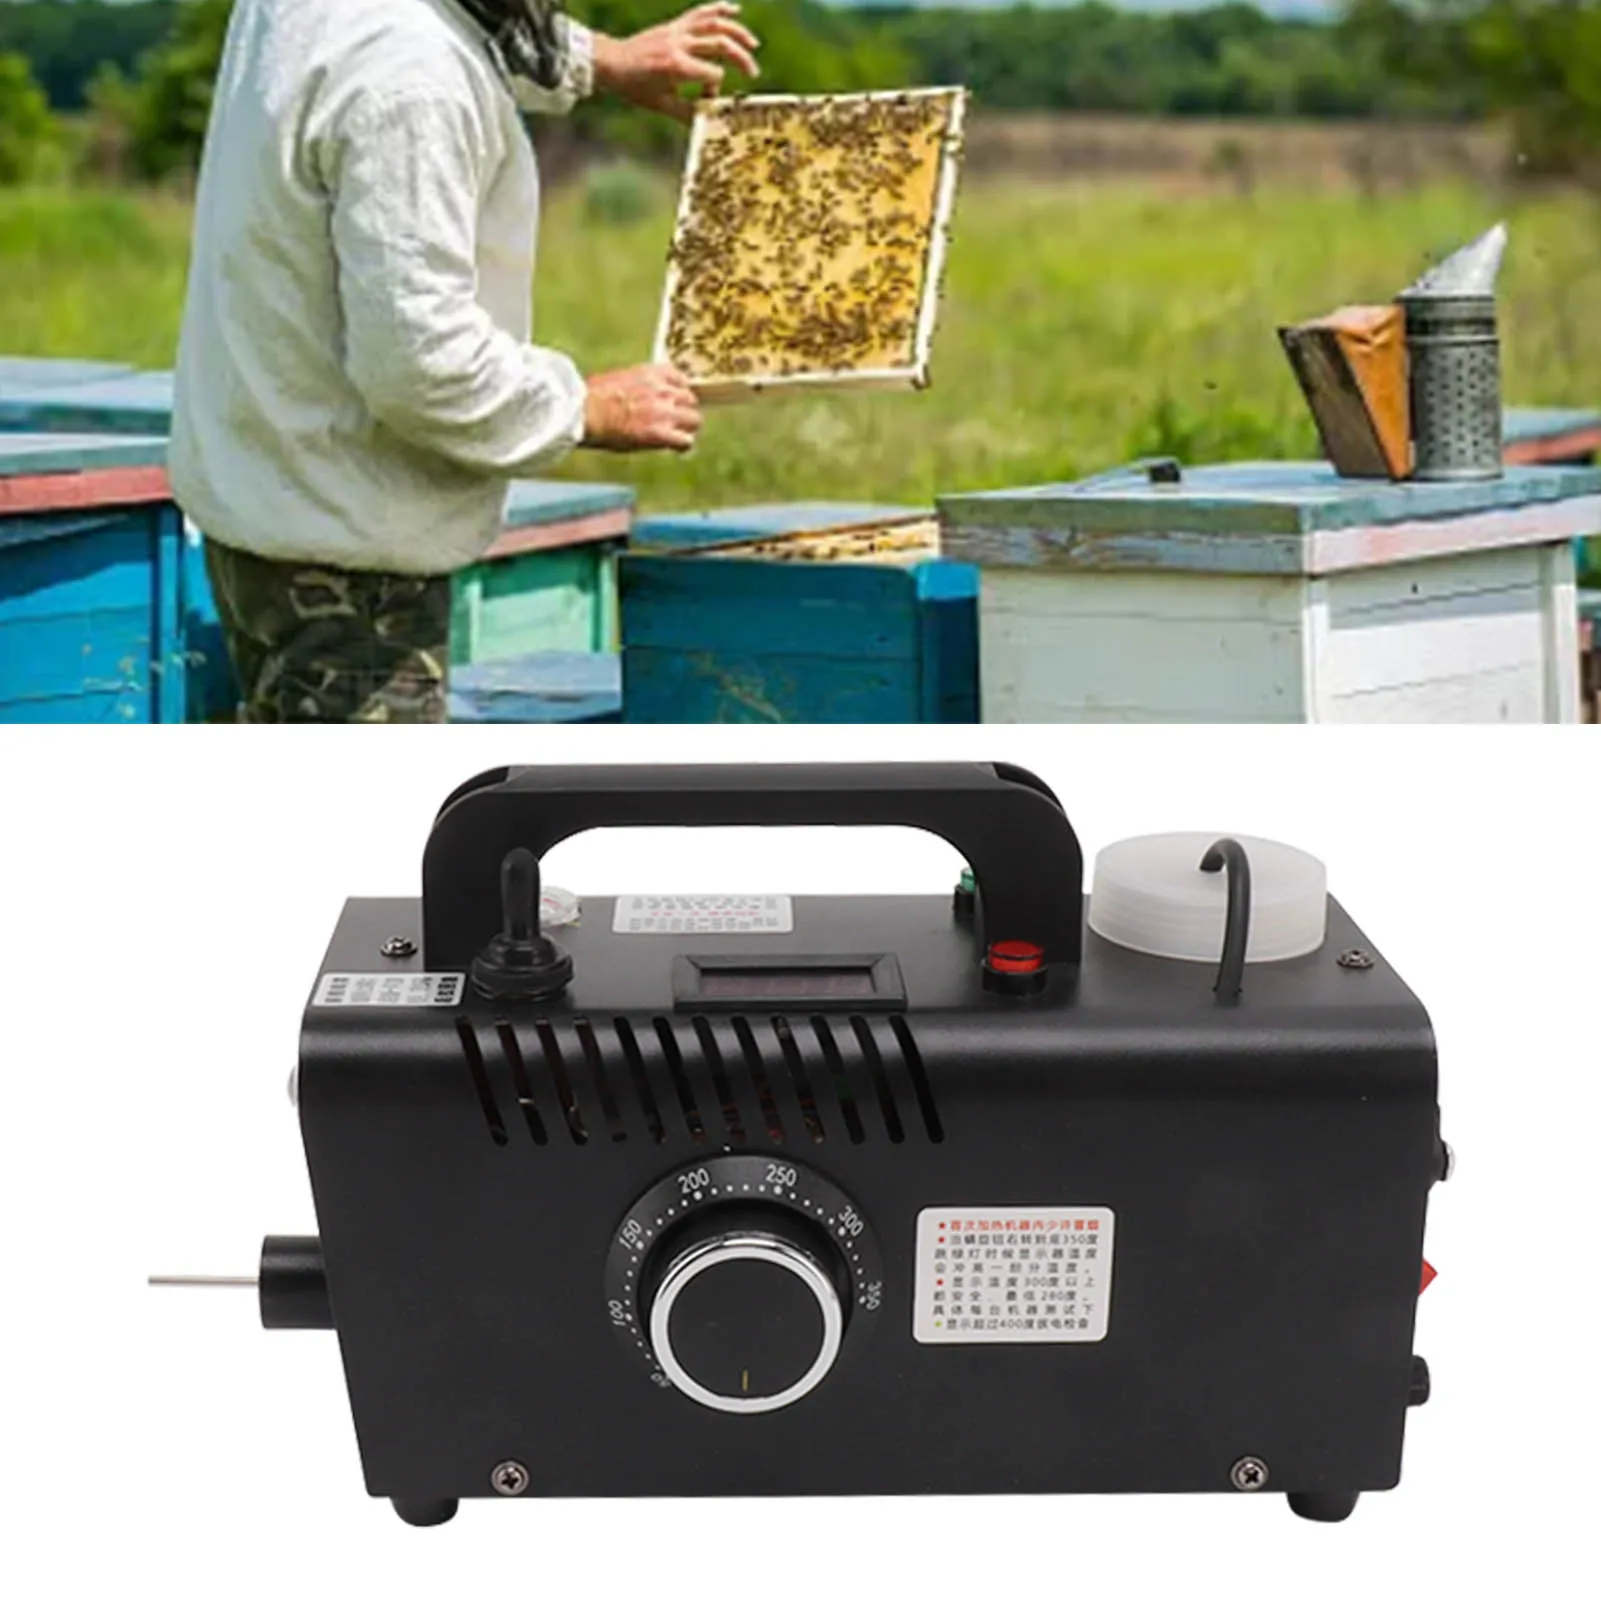 12 В 250 Вт Противотуманная Дымовая машина Электронный распылитель с синхронизацией для удаления клещей с пчел